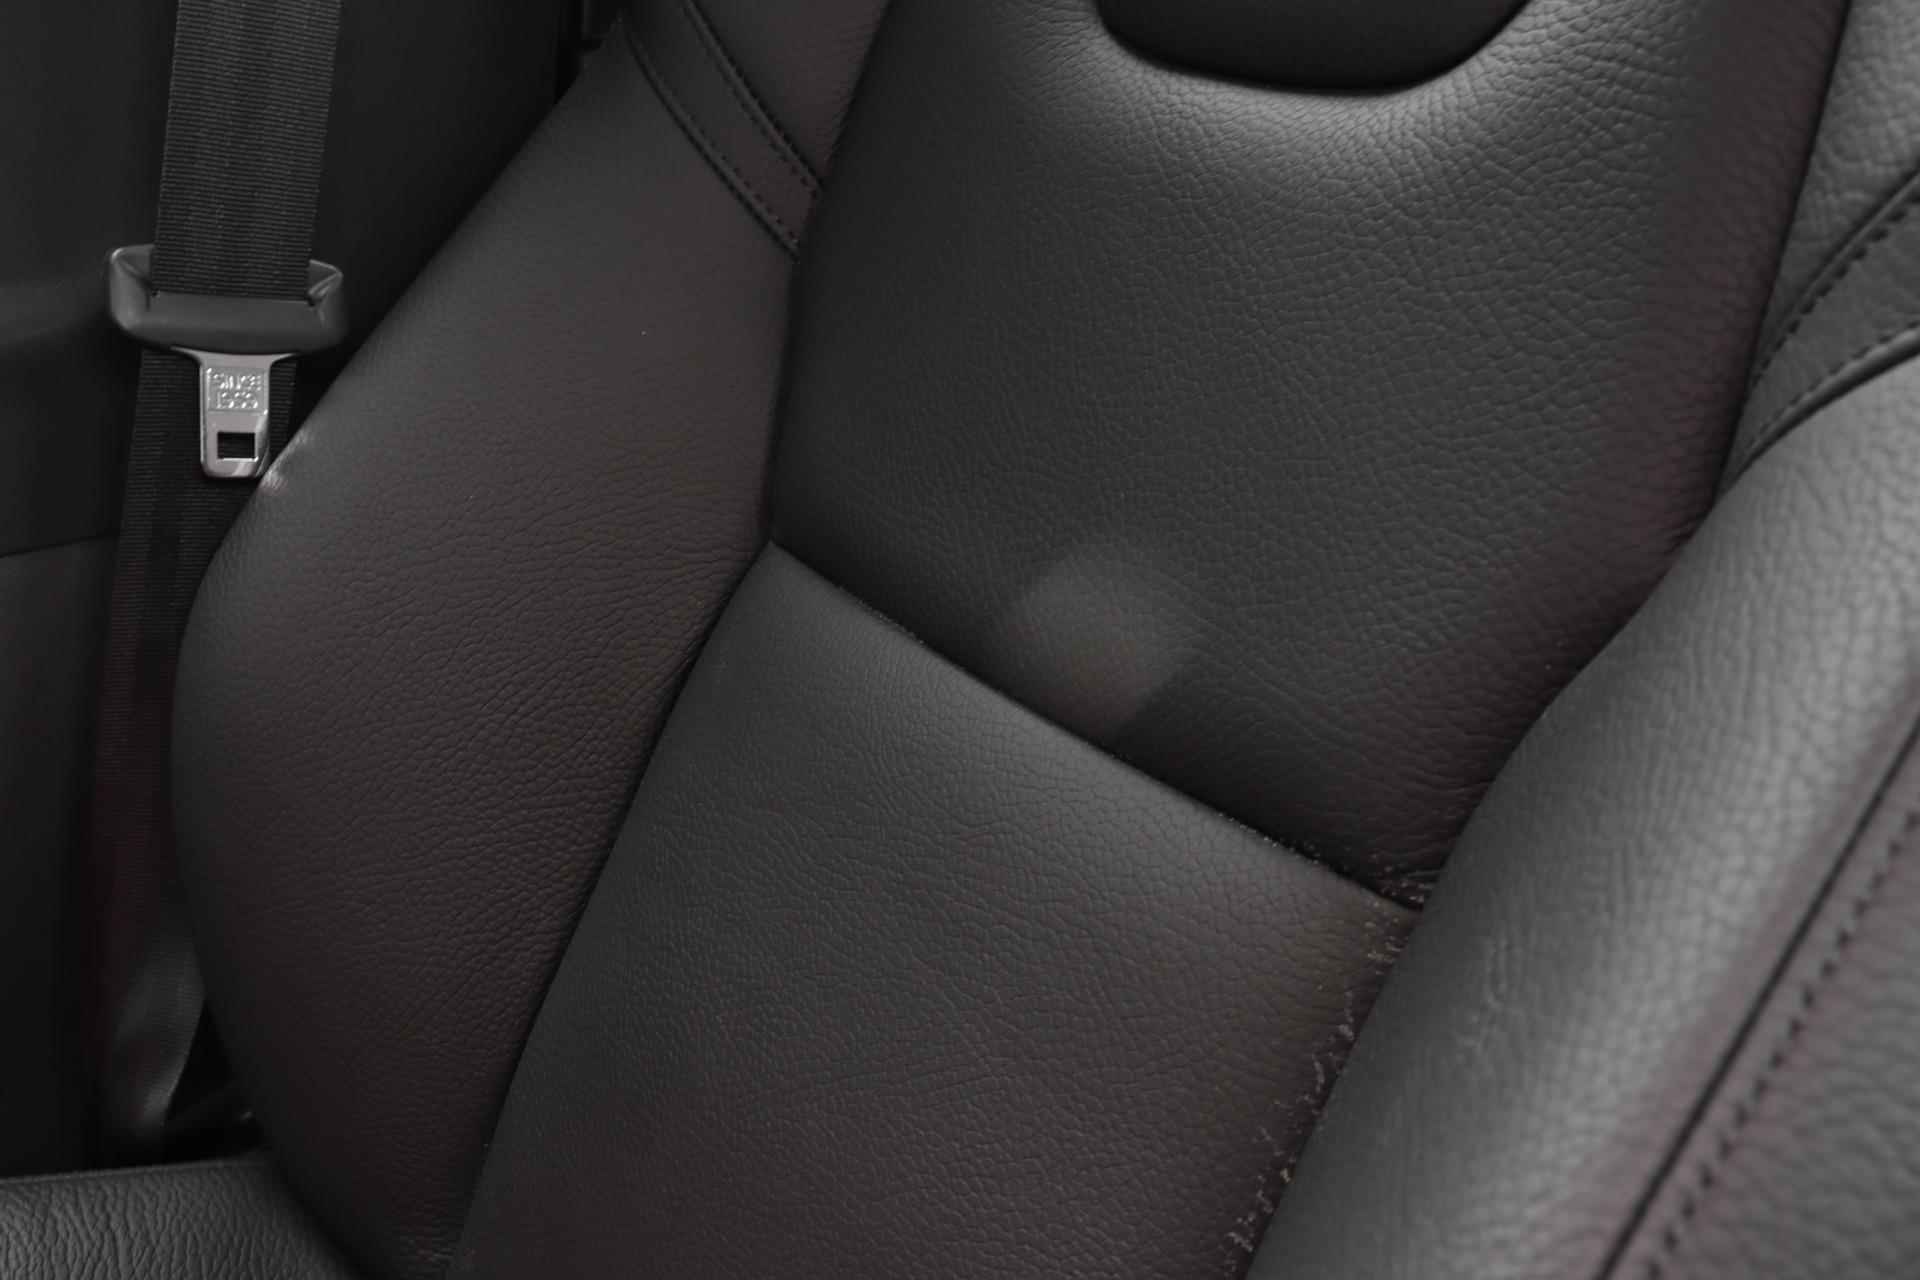 Volvo V90 T6 AWD Recharge Inscription - Panorama/schuifdak - IntelliSafe Assist & Surround - Harman/Kardon audio - Adaptieve LED koplampen - Parkeercamera achter - Verwarmde voorstoelen & stuur - Parkeersensoren voor & achter - Elektr. bedienb. voorstoelen met geheugen - Standkachel - 19' LMV - 24/33